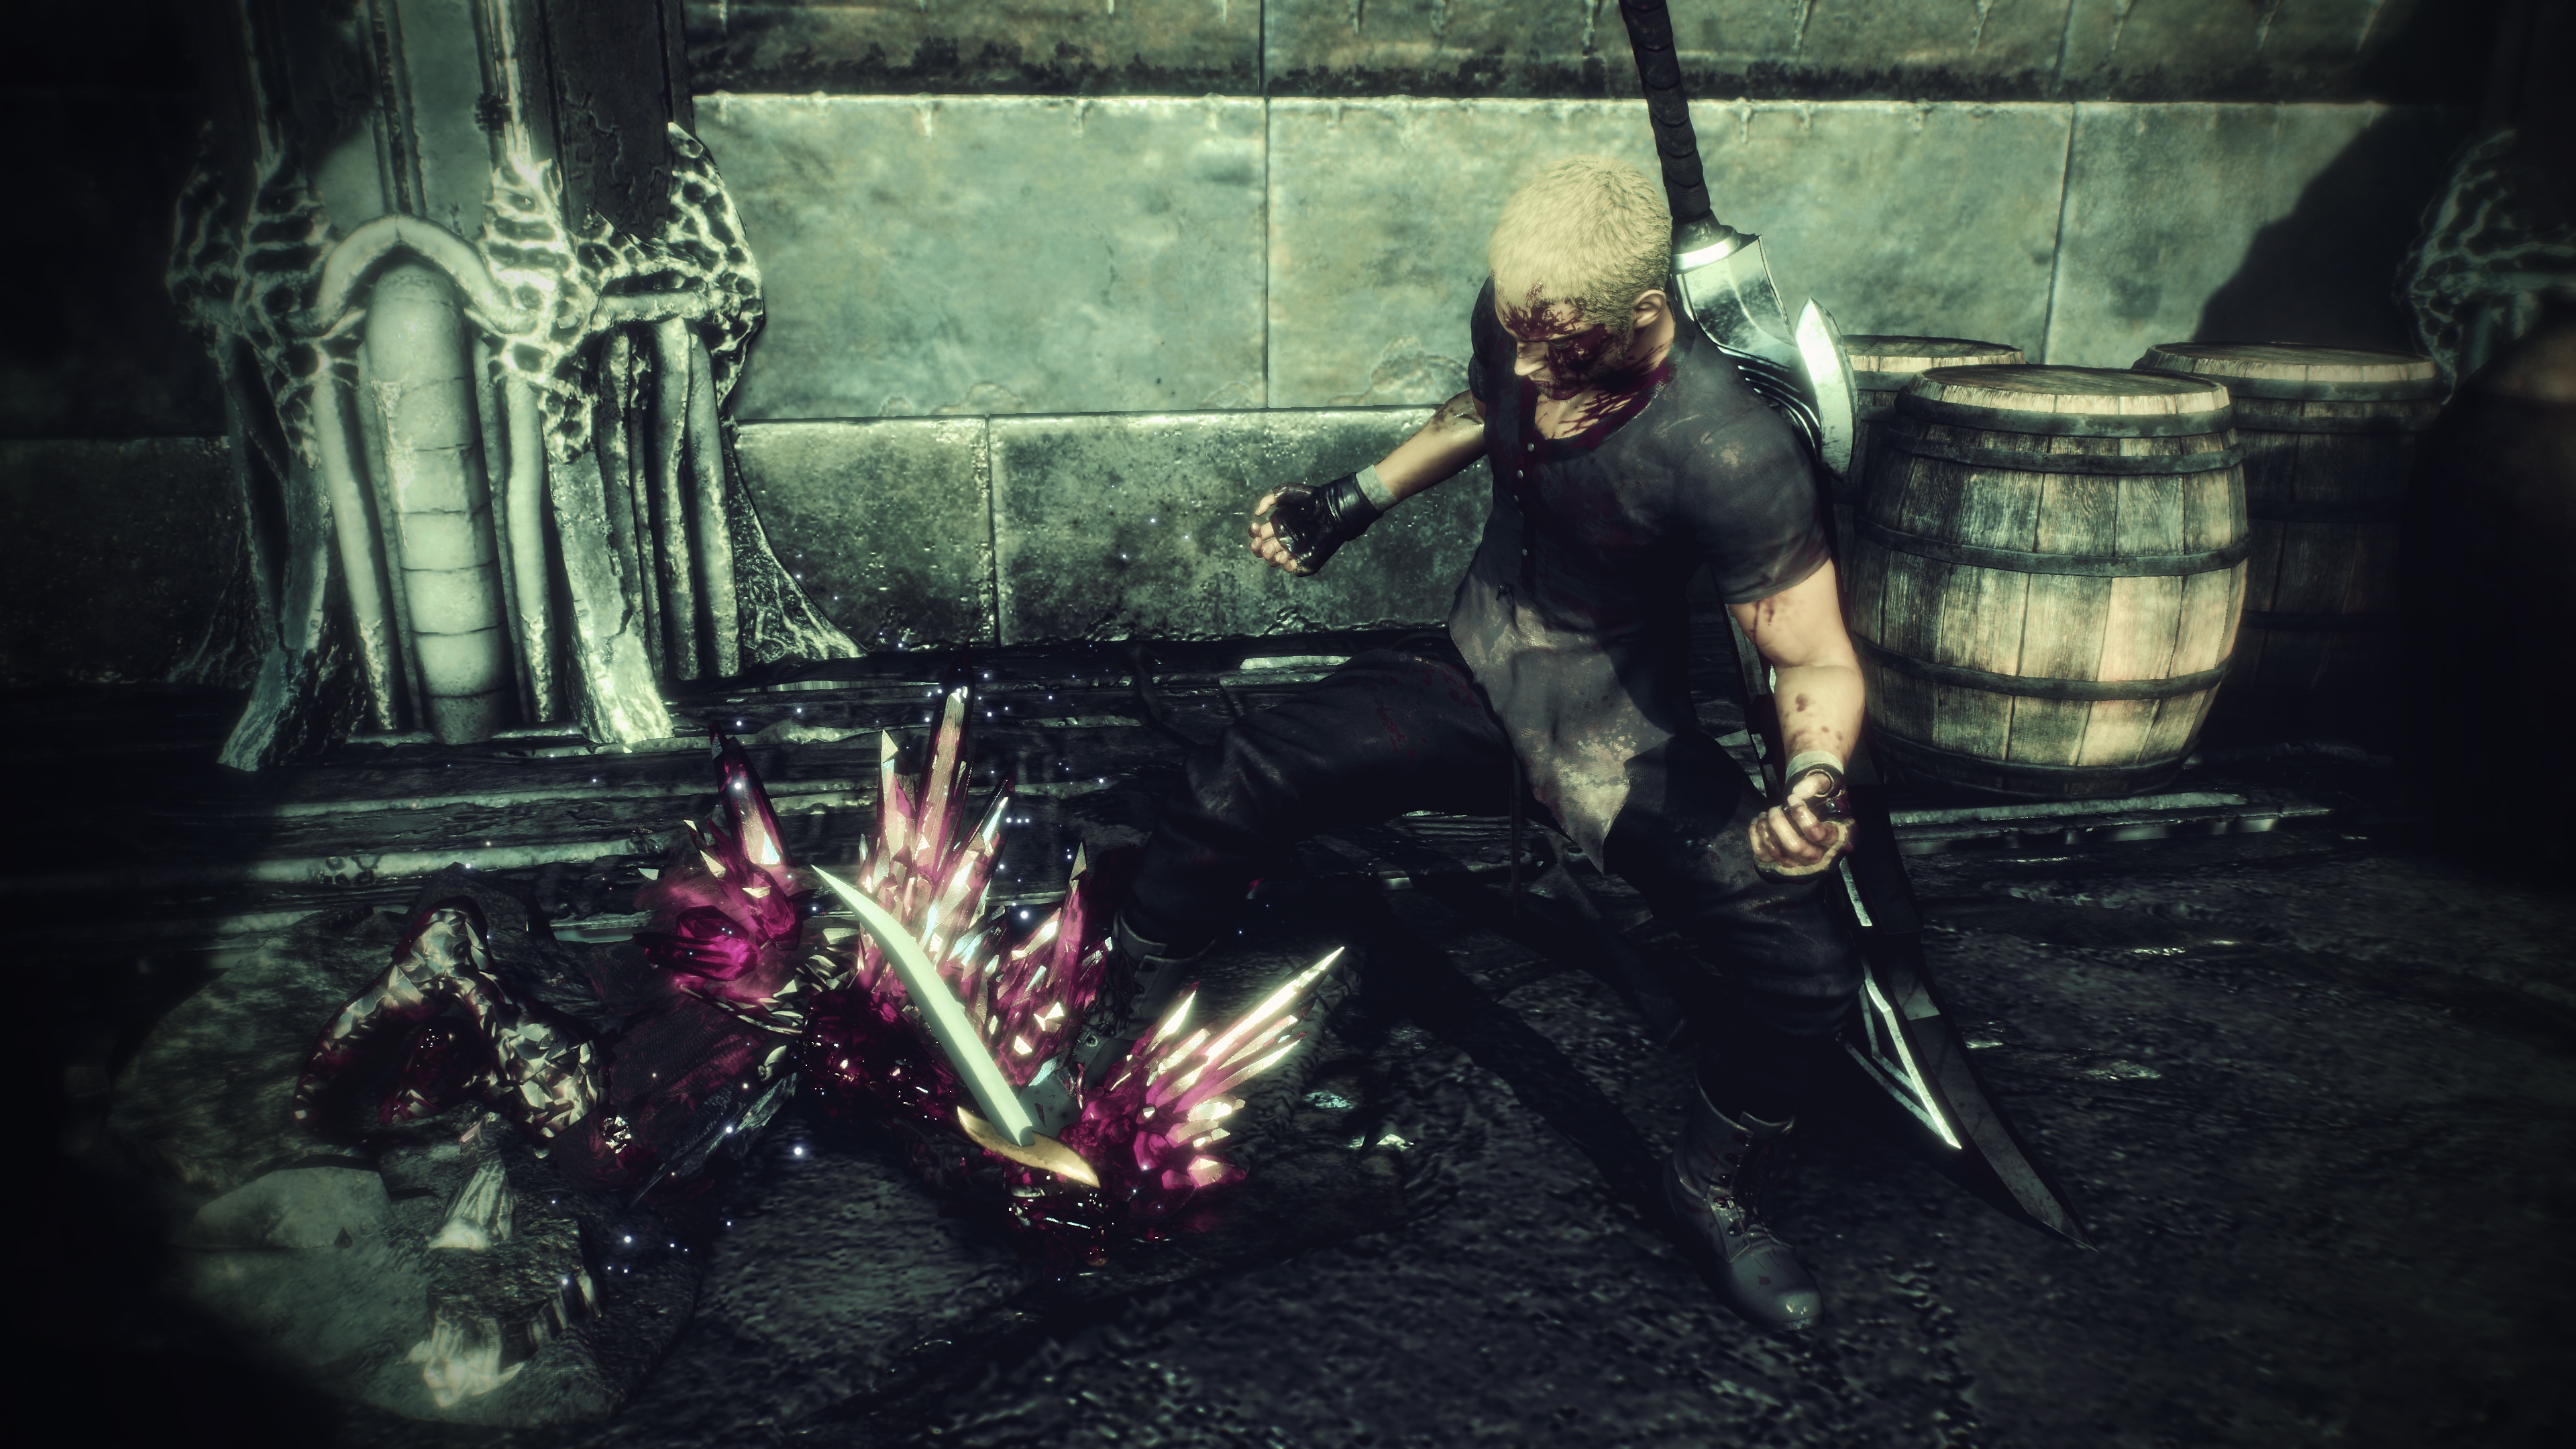 Stranger of Paradise Final Fantasy Origin – снимок экрана, на котором Джек стоит над розовыми кристаллами